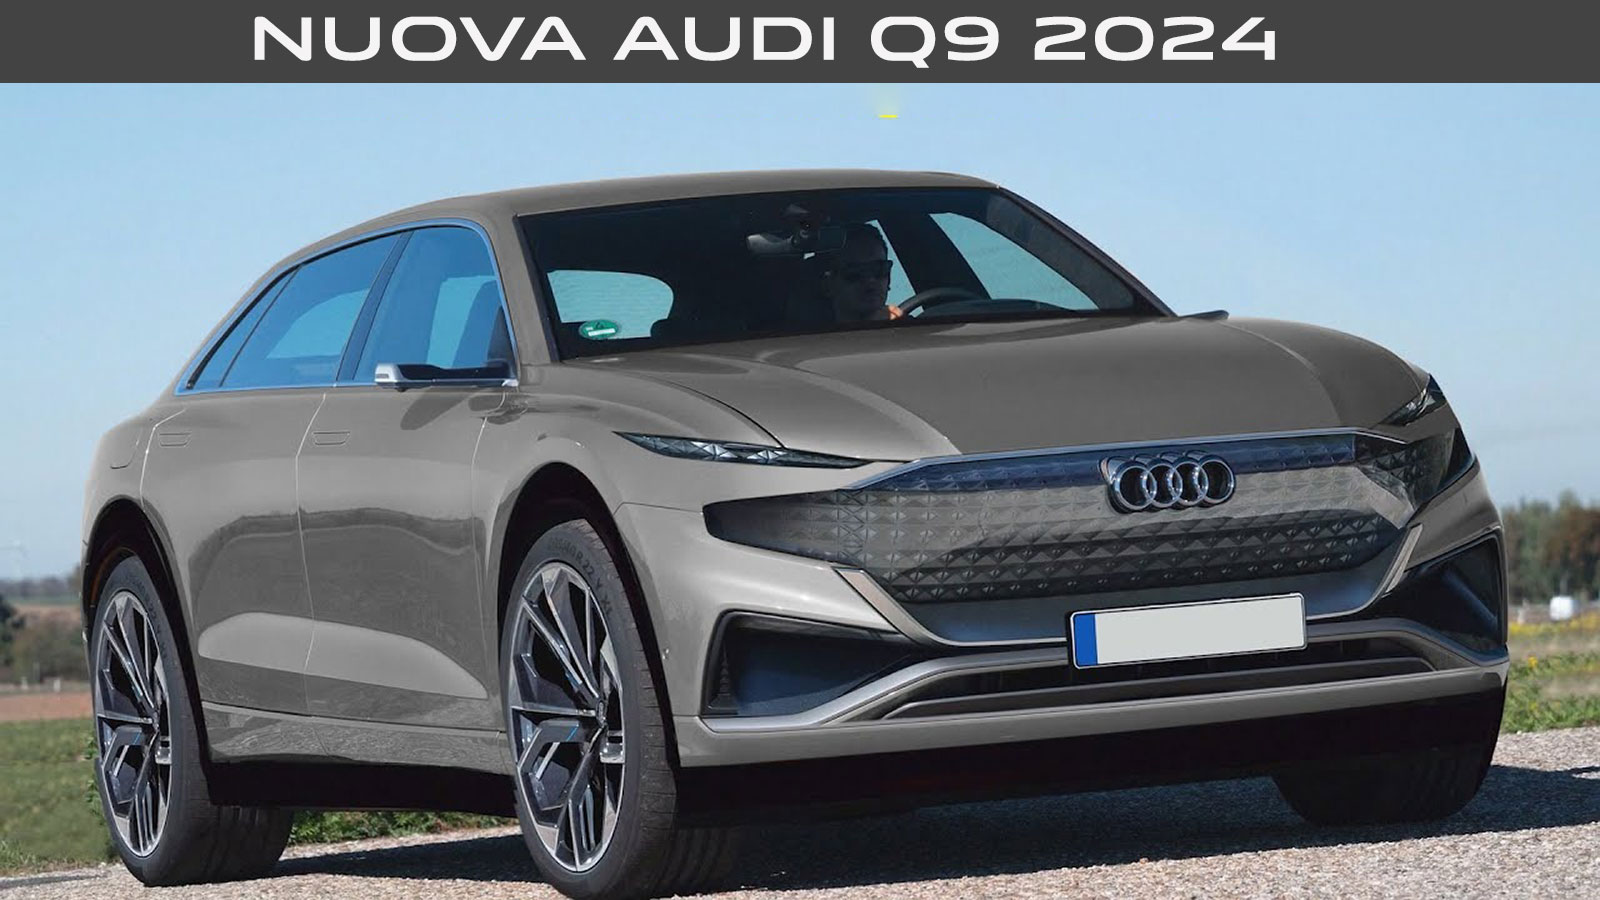 Audi Q9 2024 design non ufficiale